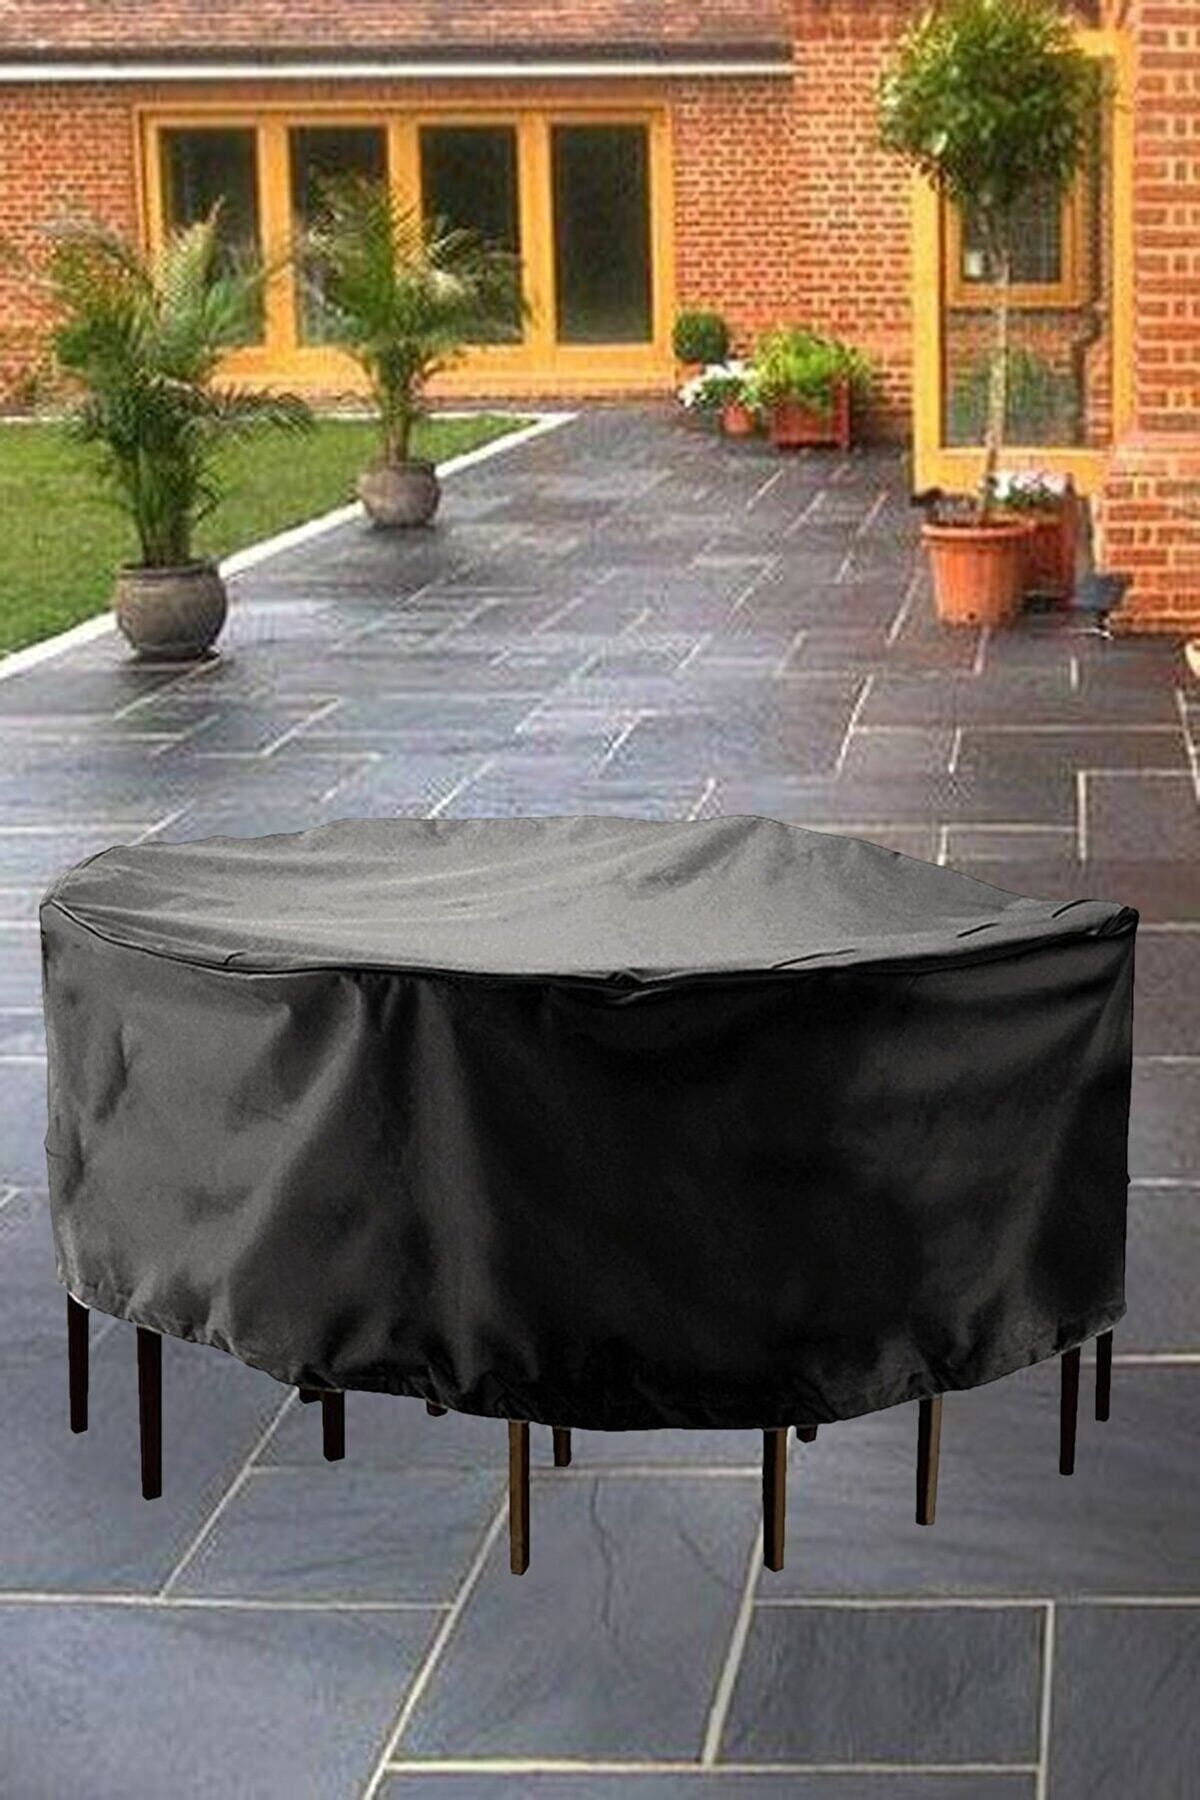 Bundera Guise Bahçe Mobilya Koruma Örtüsü Su Geçirmez Masa Sandalye Yağmur Toz Kir Önleyici Branda 160x80cm